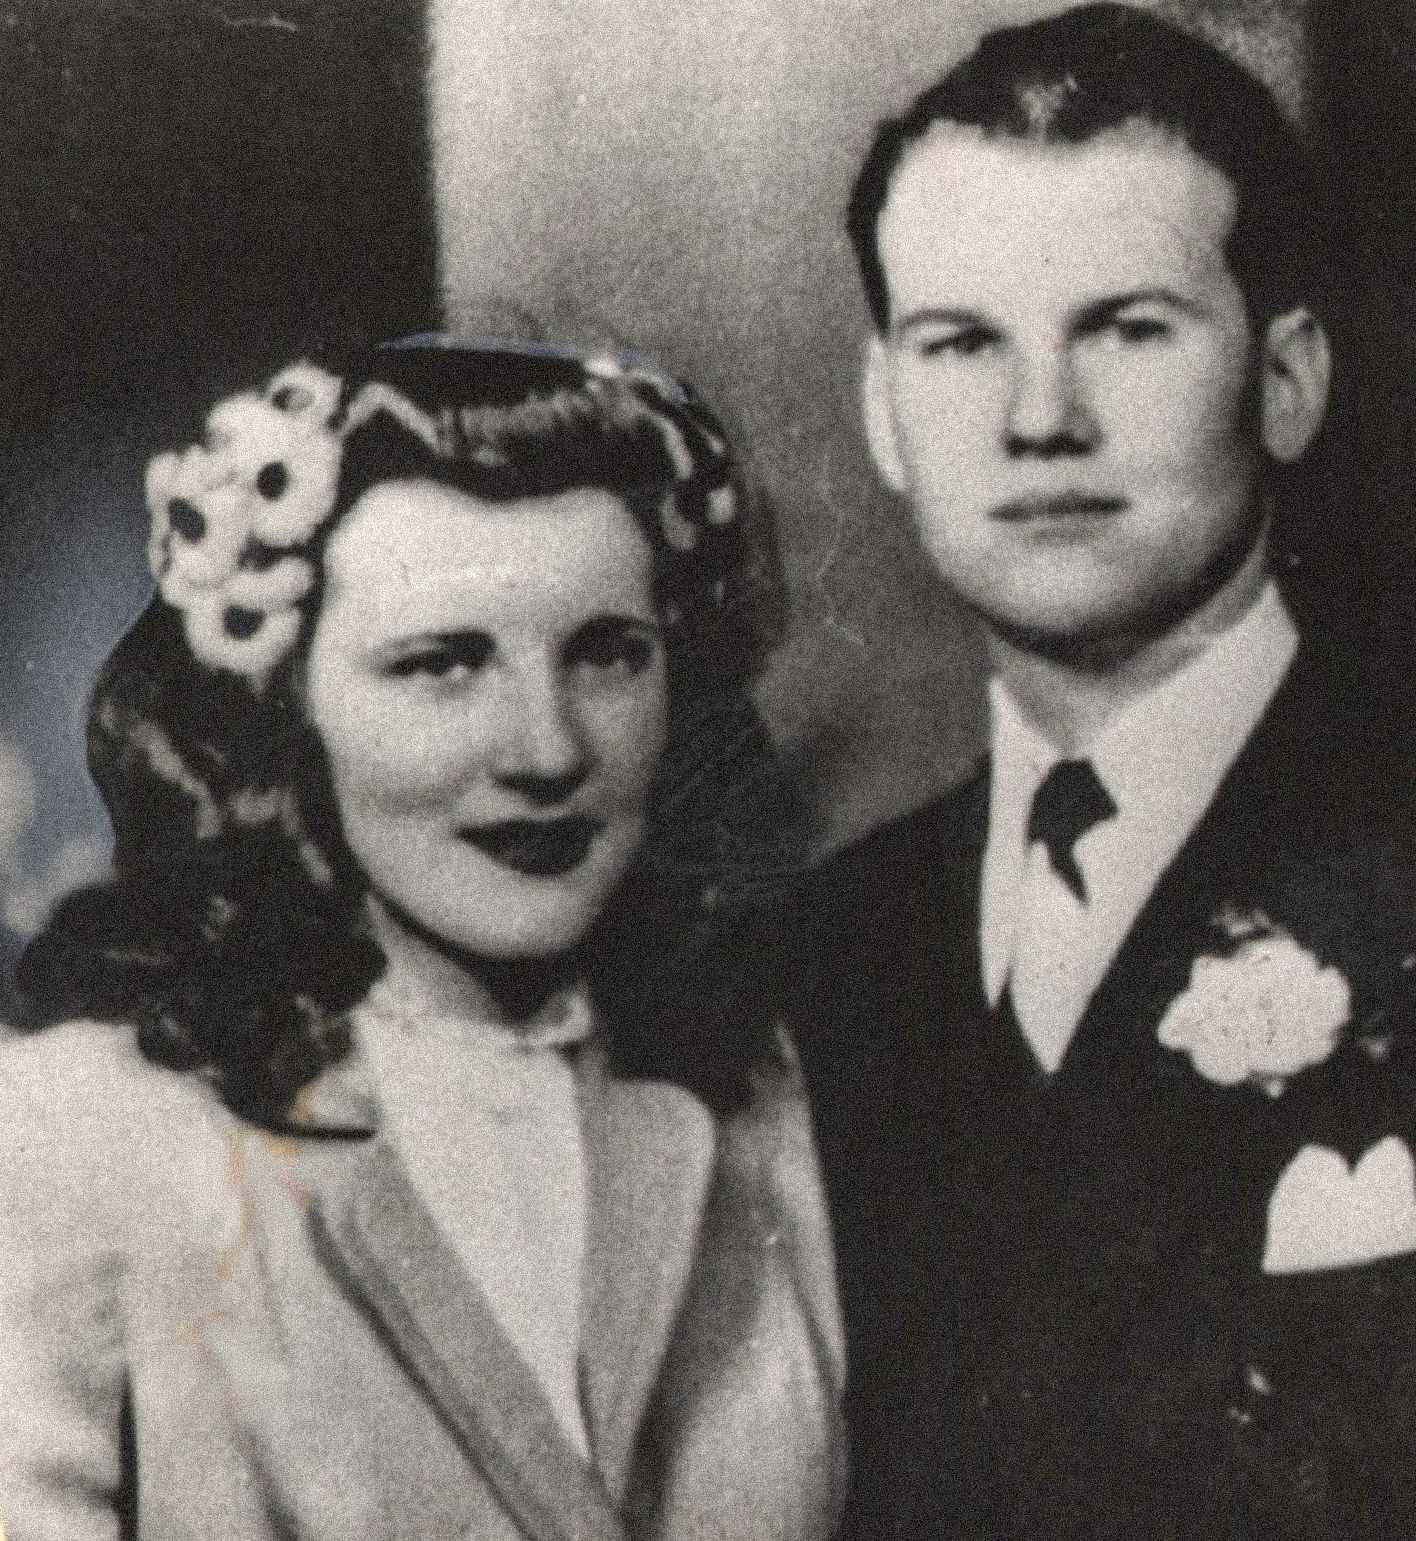 Hier afgebeeld zijn Sam en Marilyn Sheppard, een jong en schijnbaar gelukkig stel. De twee trouwden op 21 februari 1945 en kregen samen één kind, Sam Reese Sheppard. Marilyn was zwanger van haar tweede kind op het moment van haar moord.